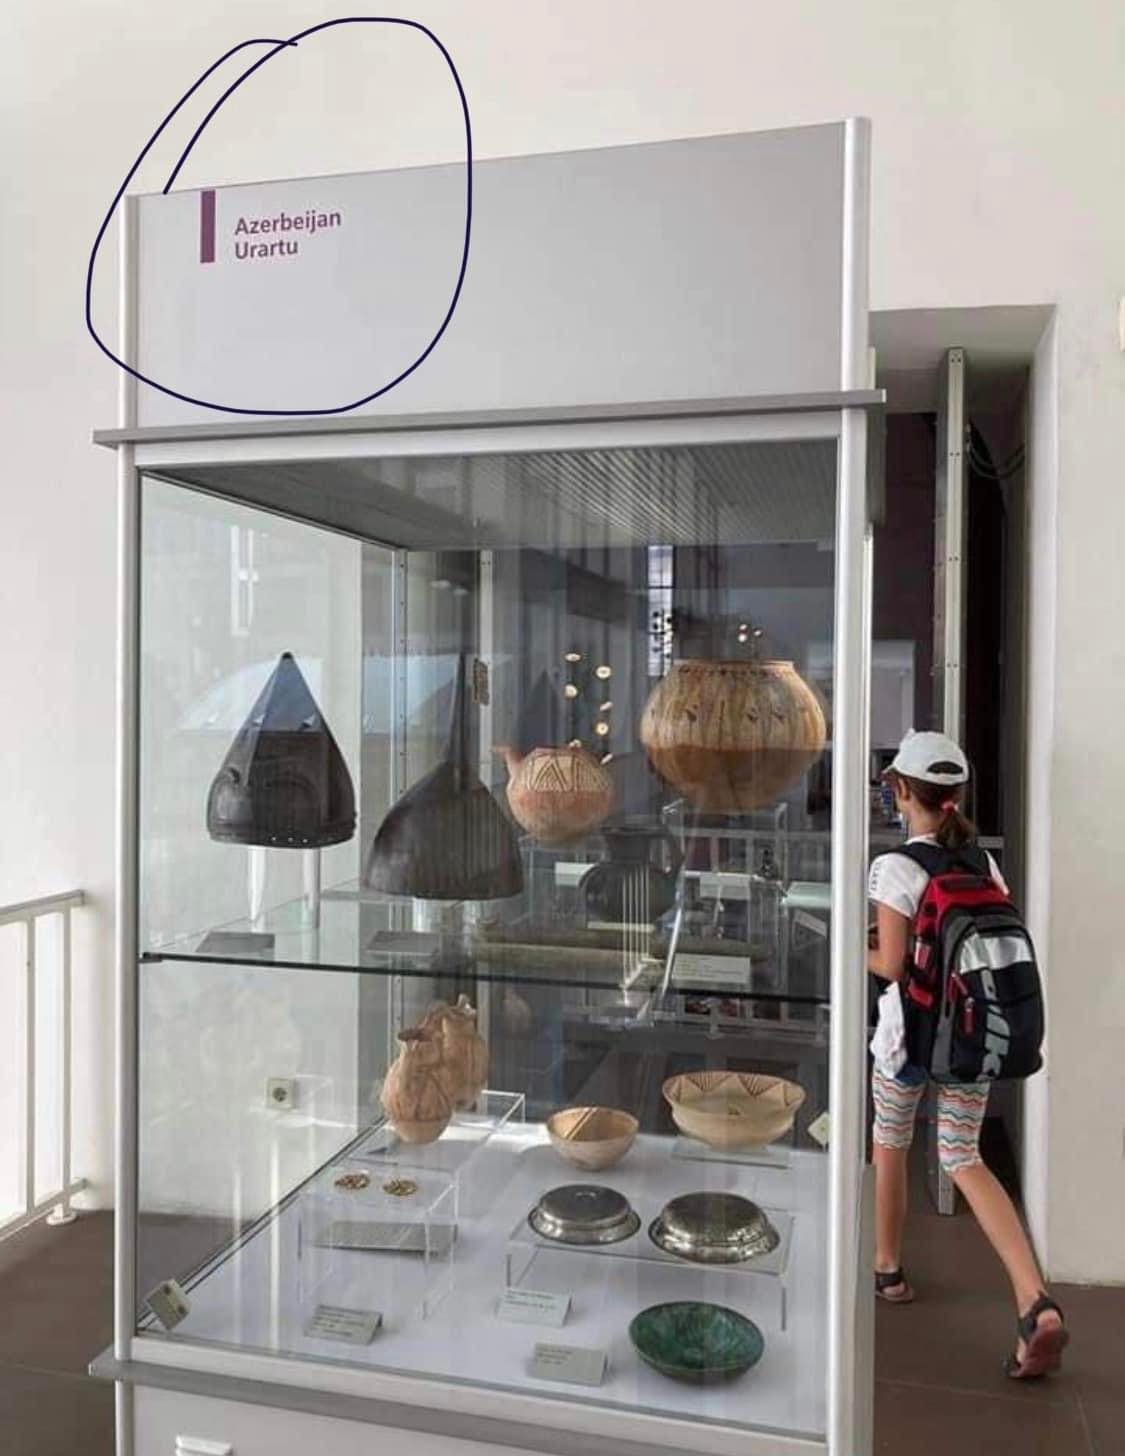 Ֆրանկֆուրտի հնէաբանական թանգարանի՝ Ուրարտուին վերաբերող ցուցանակից հանվել է Ադրբեջան բառը